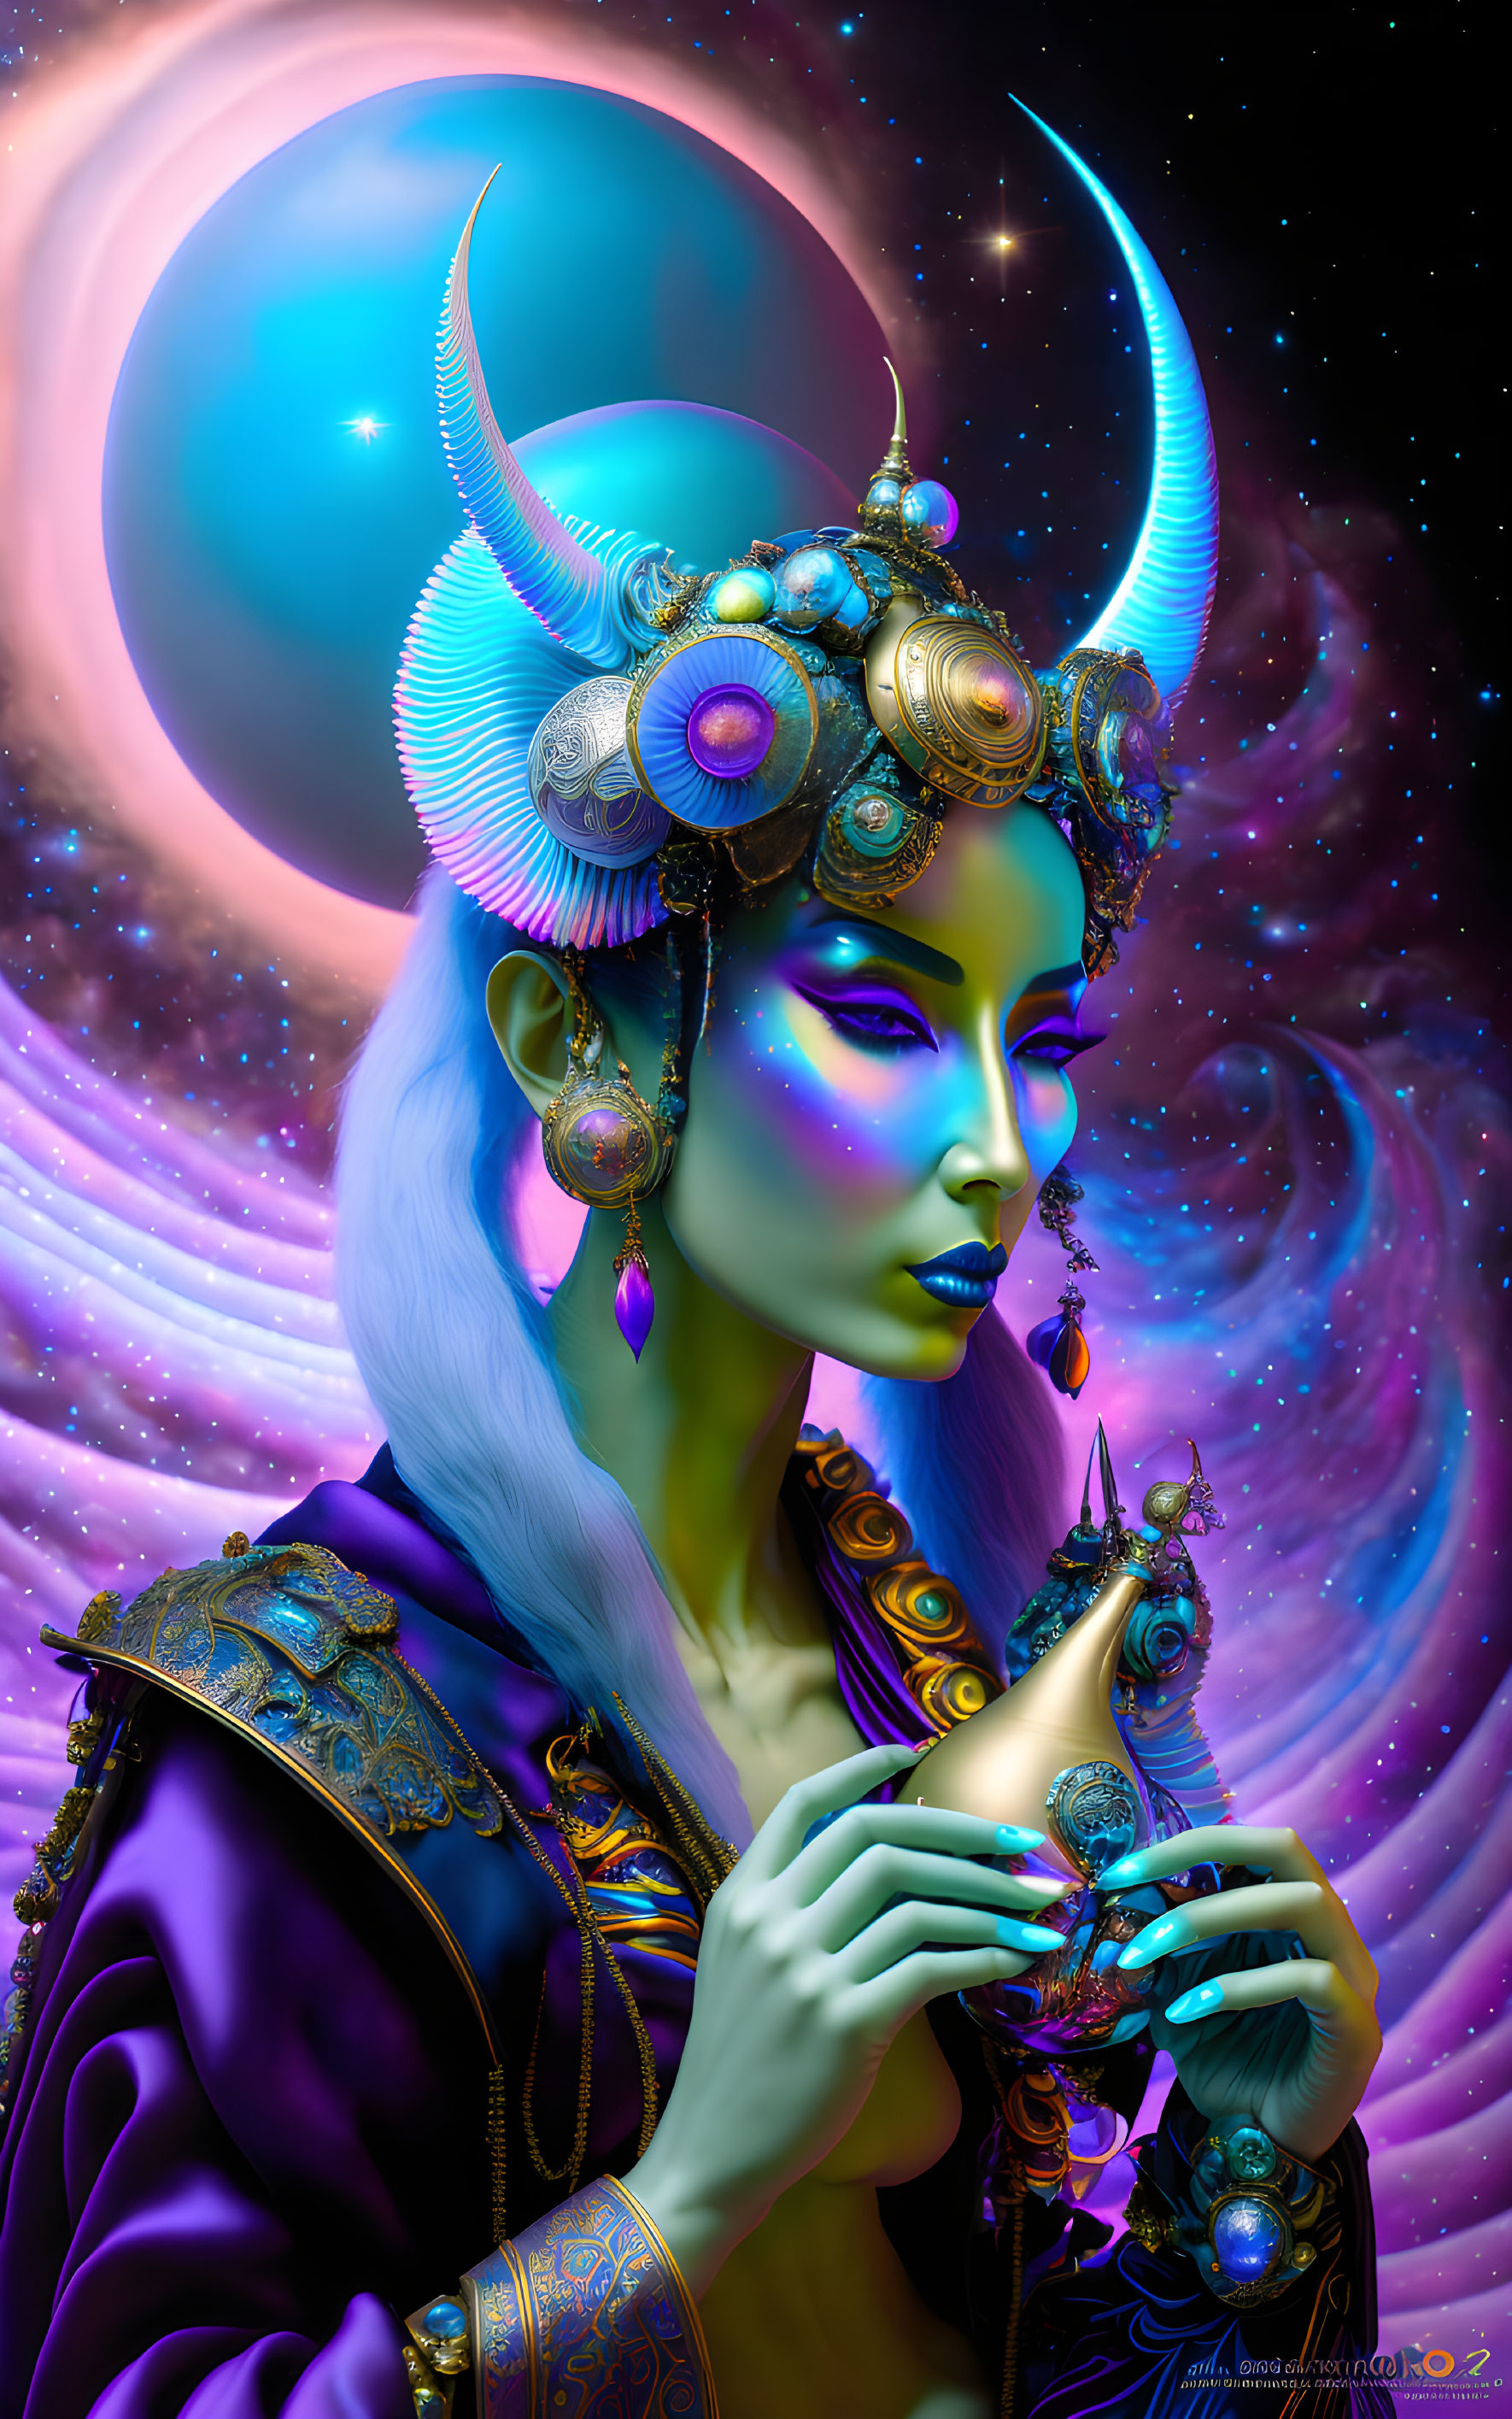 Blue-skinned female figure with horned headdress in cosmic setting